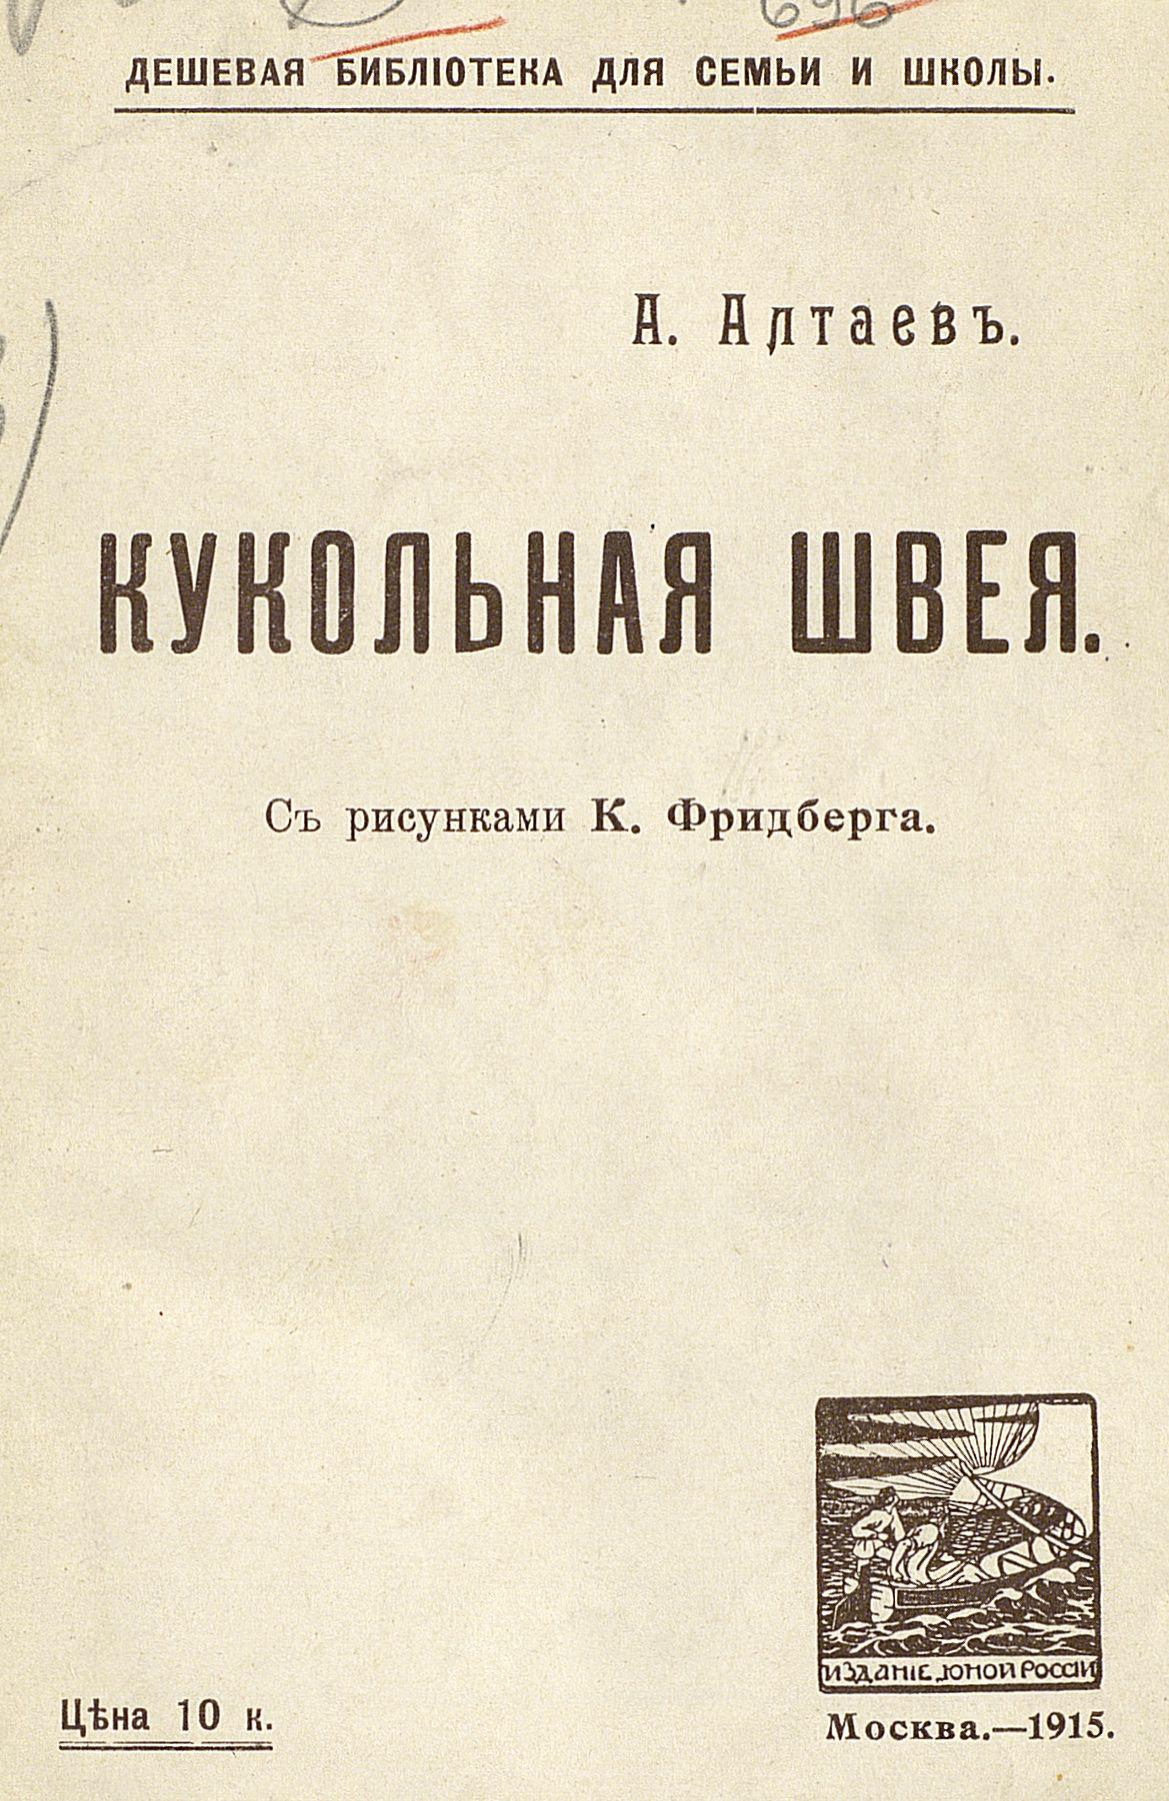 Алтаев Ал. - Кукольная швея - 1915